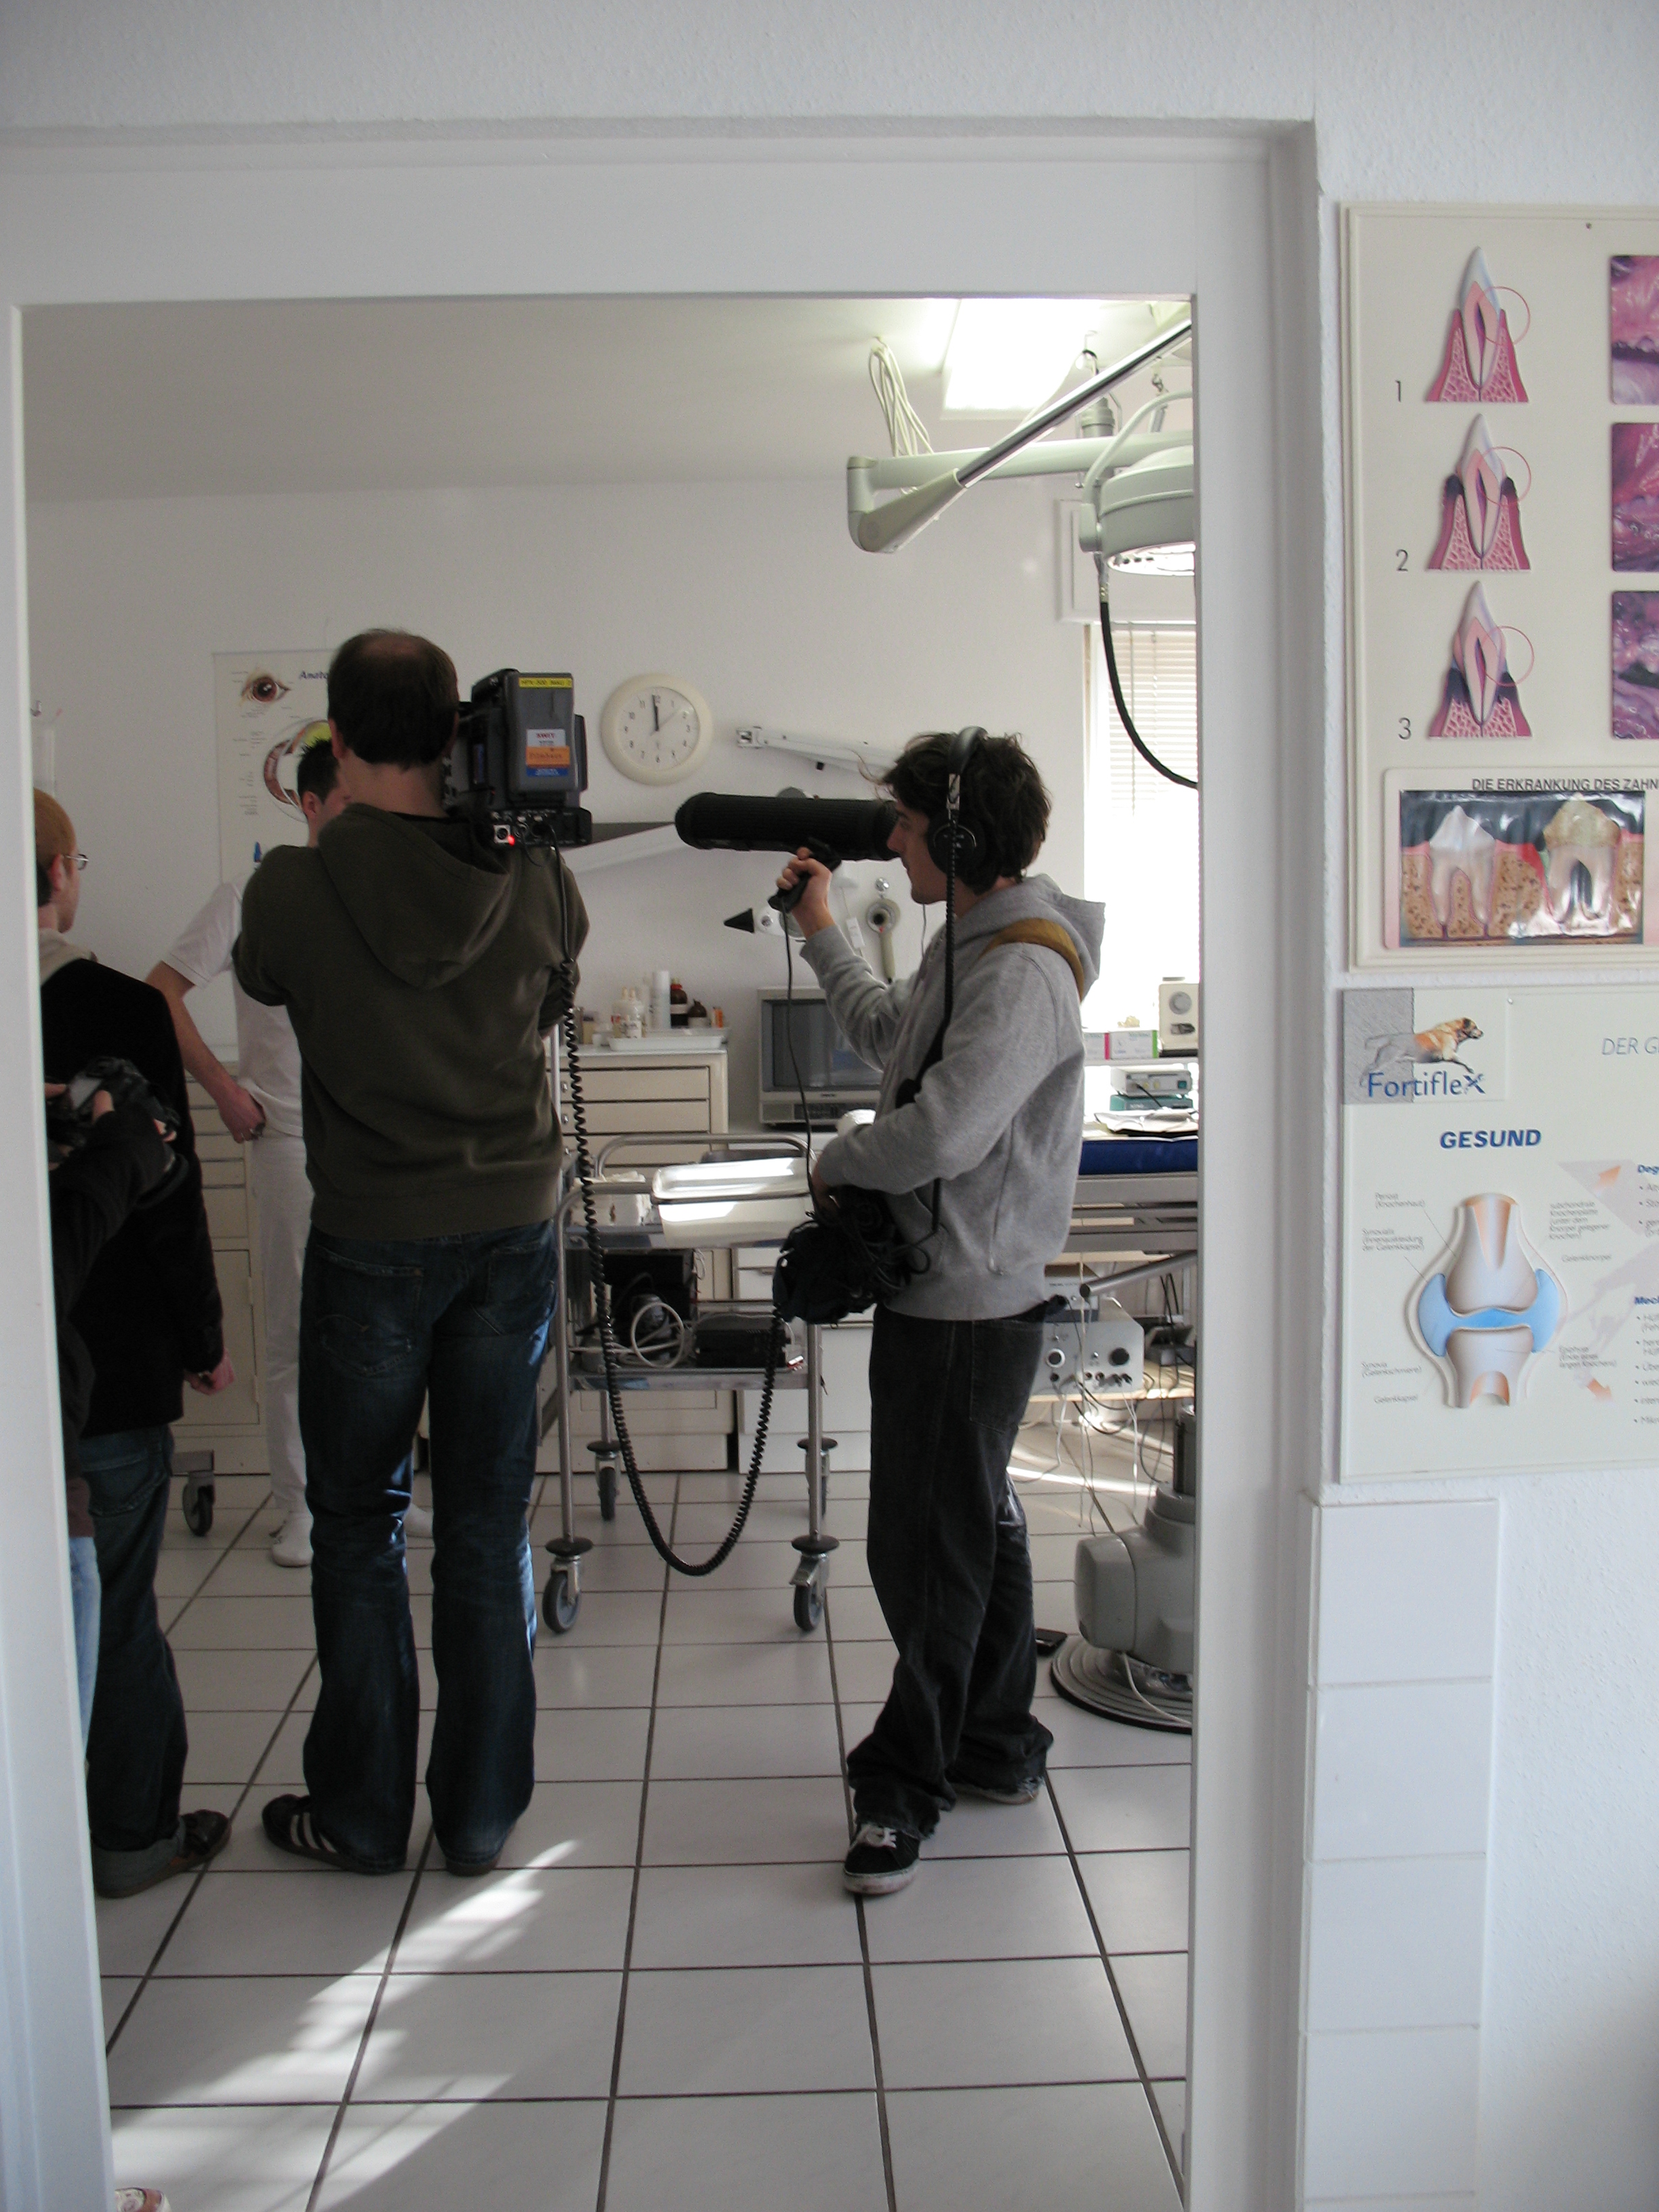 Unsere Tierarztpraxis in Detmold war wegen ihrer Vorbildlichkeit und fachlichen Kompetenz schon Gegenstand eines Fernsehbeitrages des WDR.